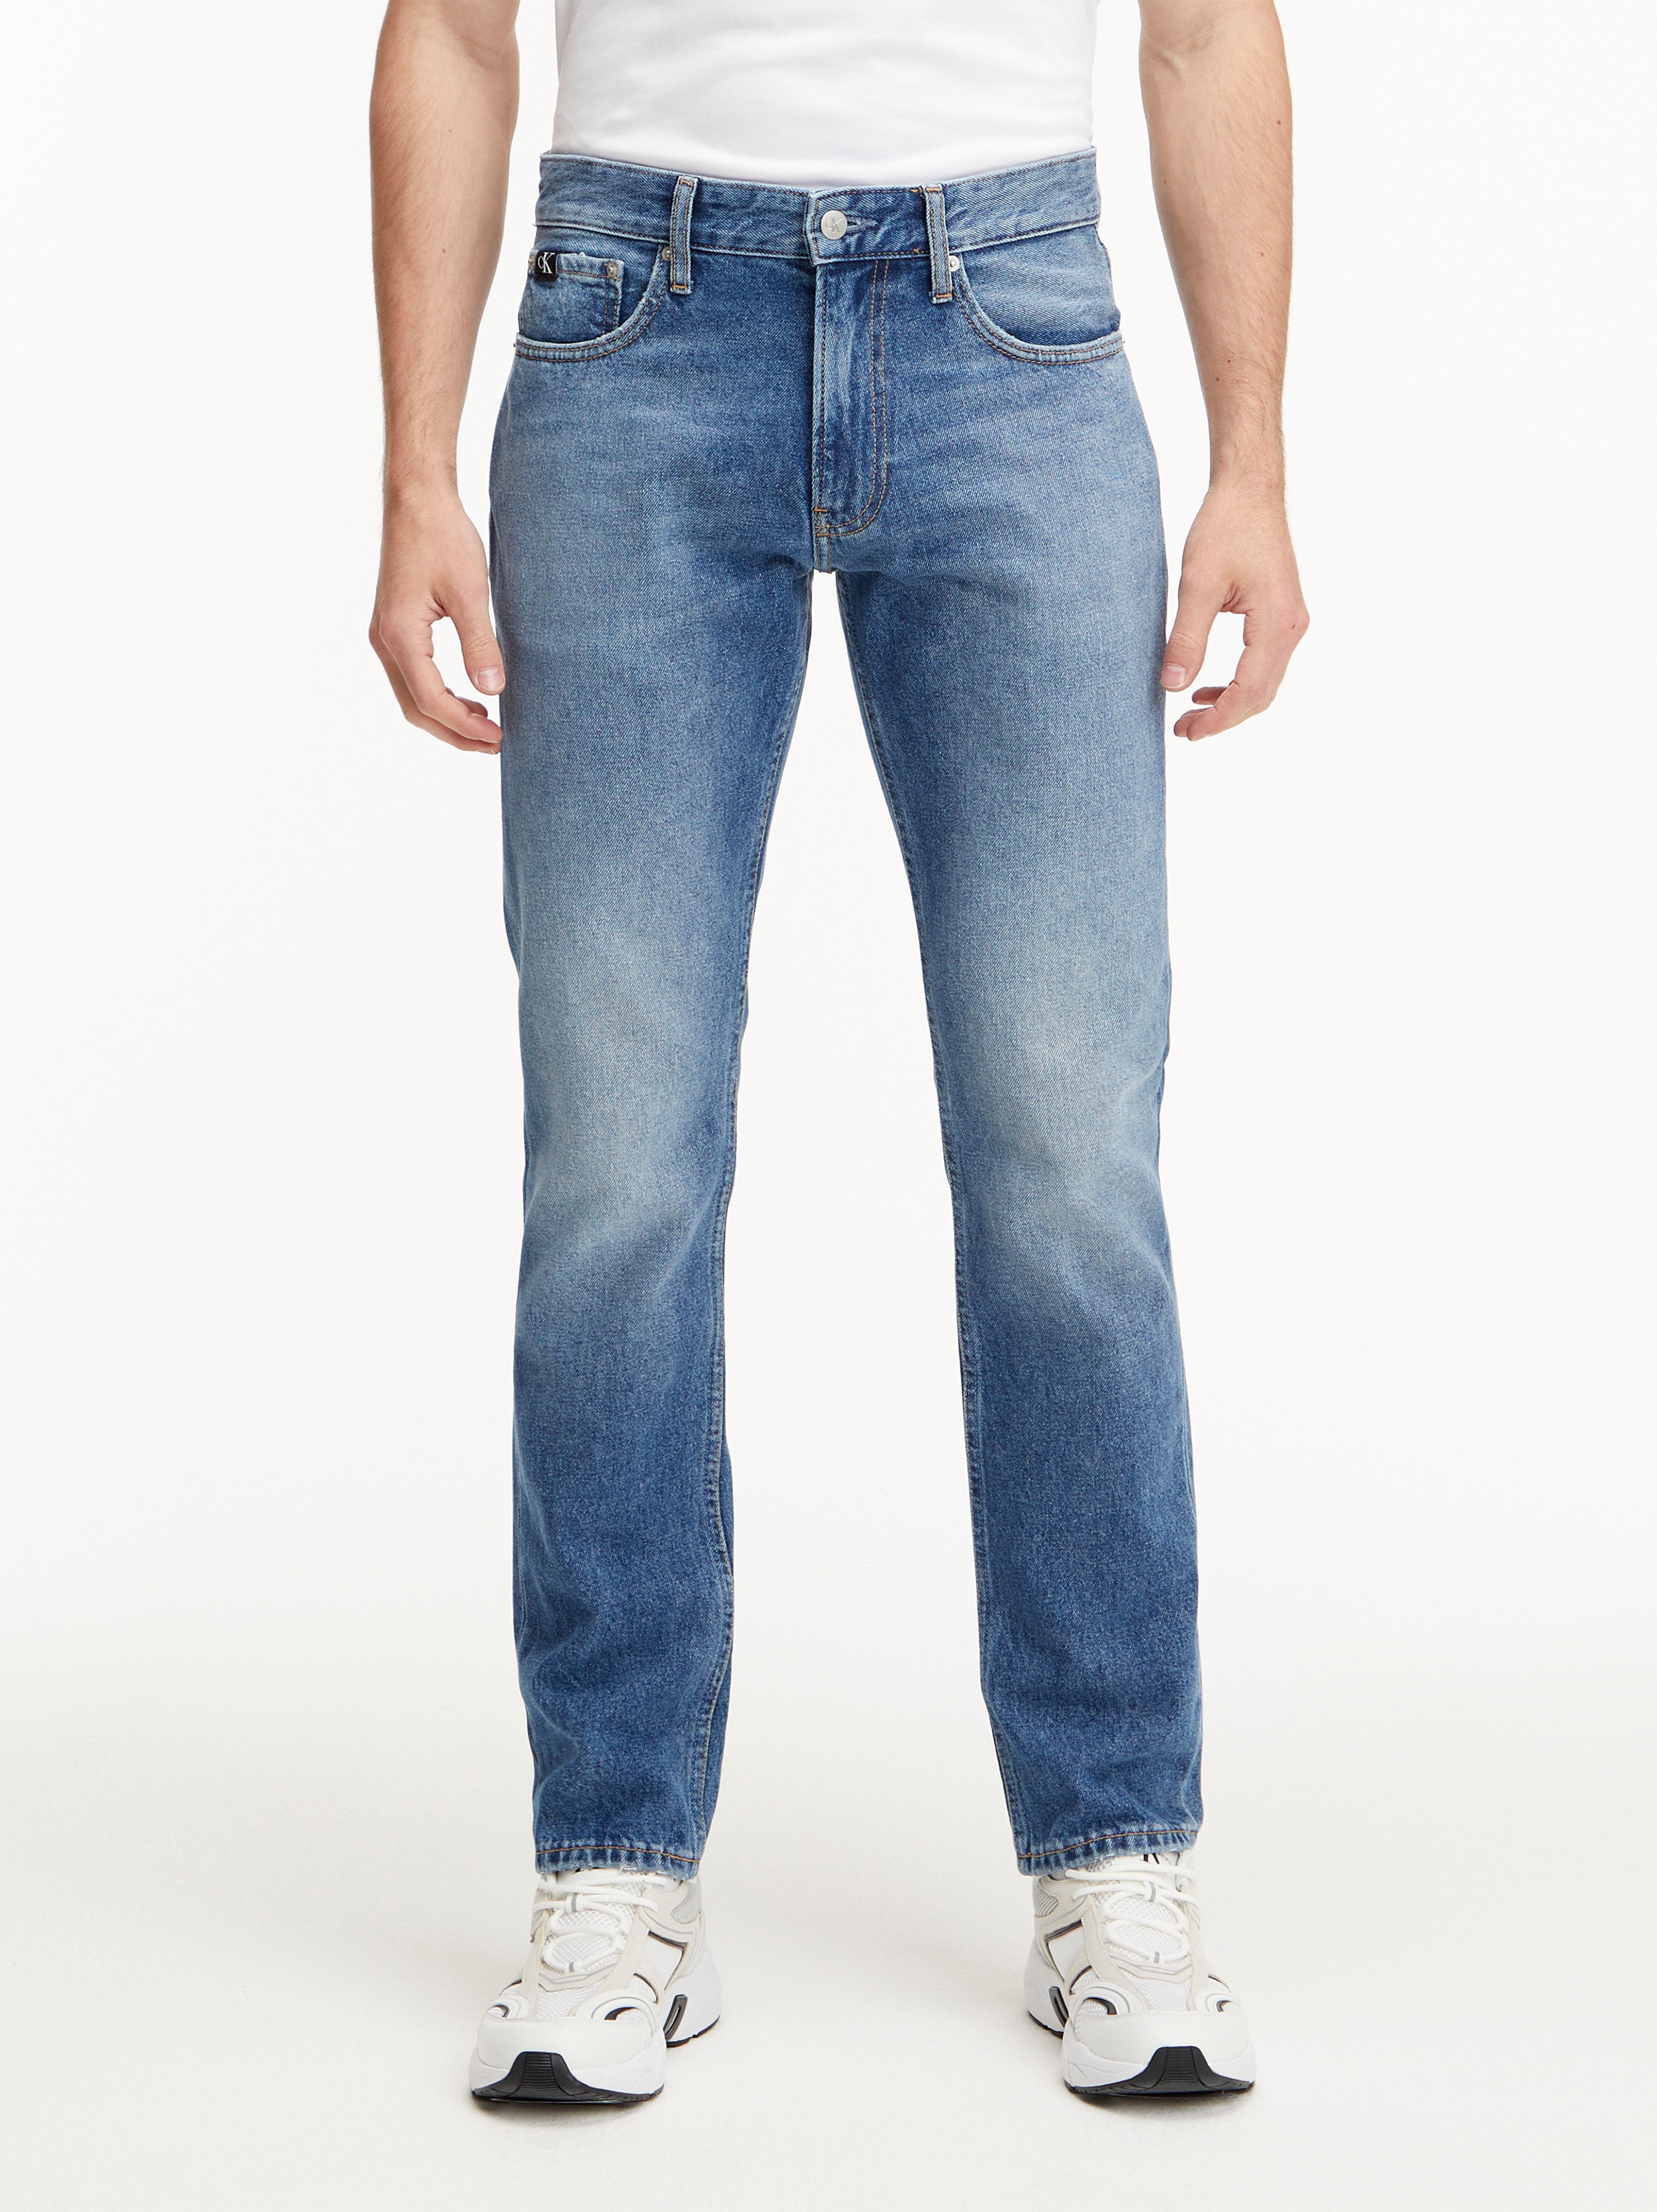 Calvin Klein Jeans -Straight leg five-pocket jeans, Denim, large image number 2